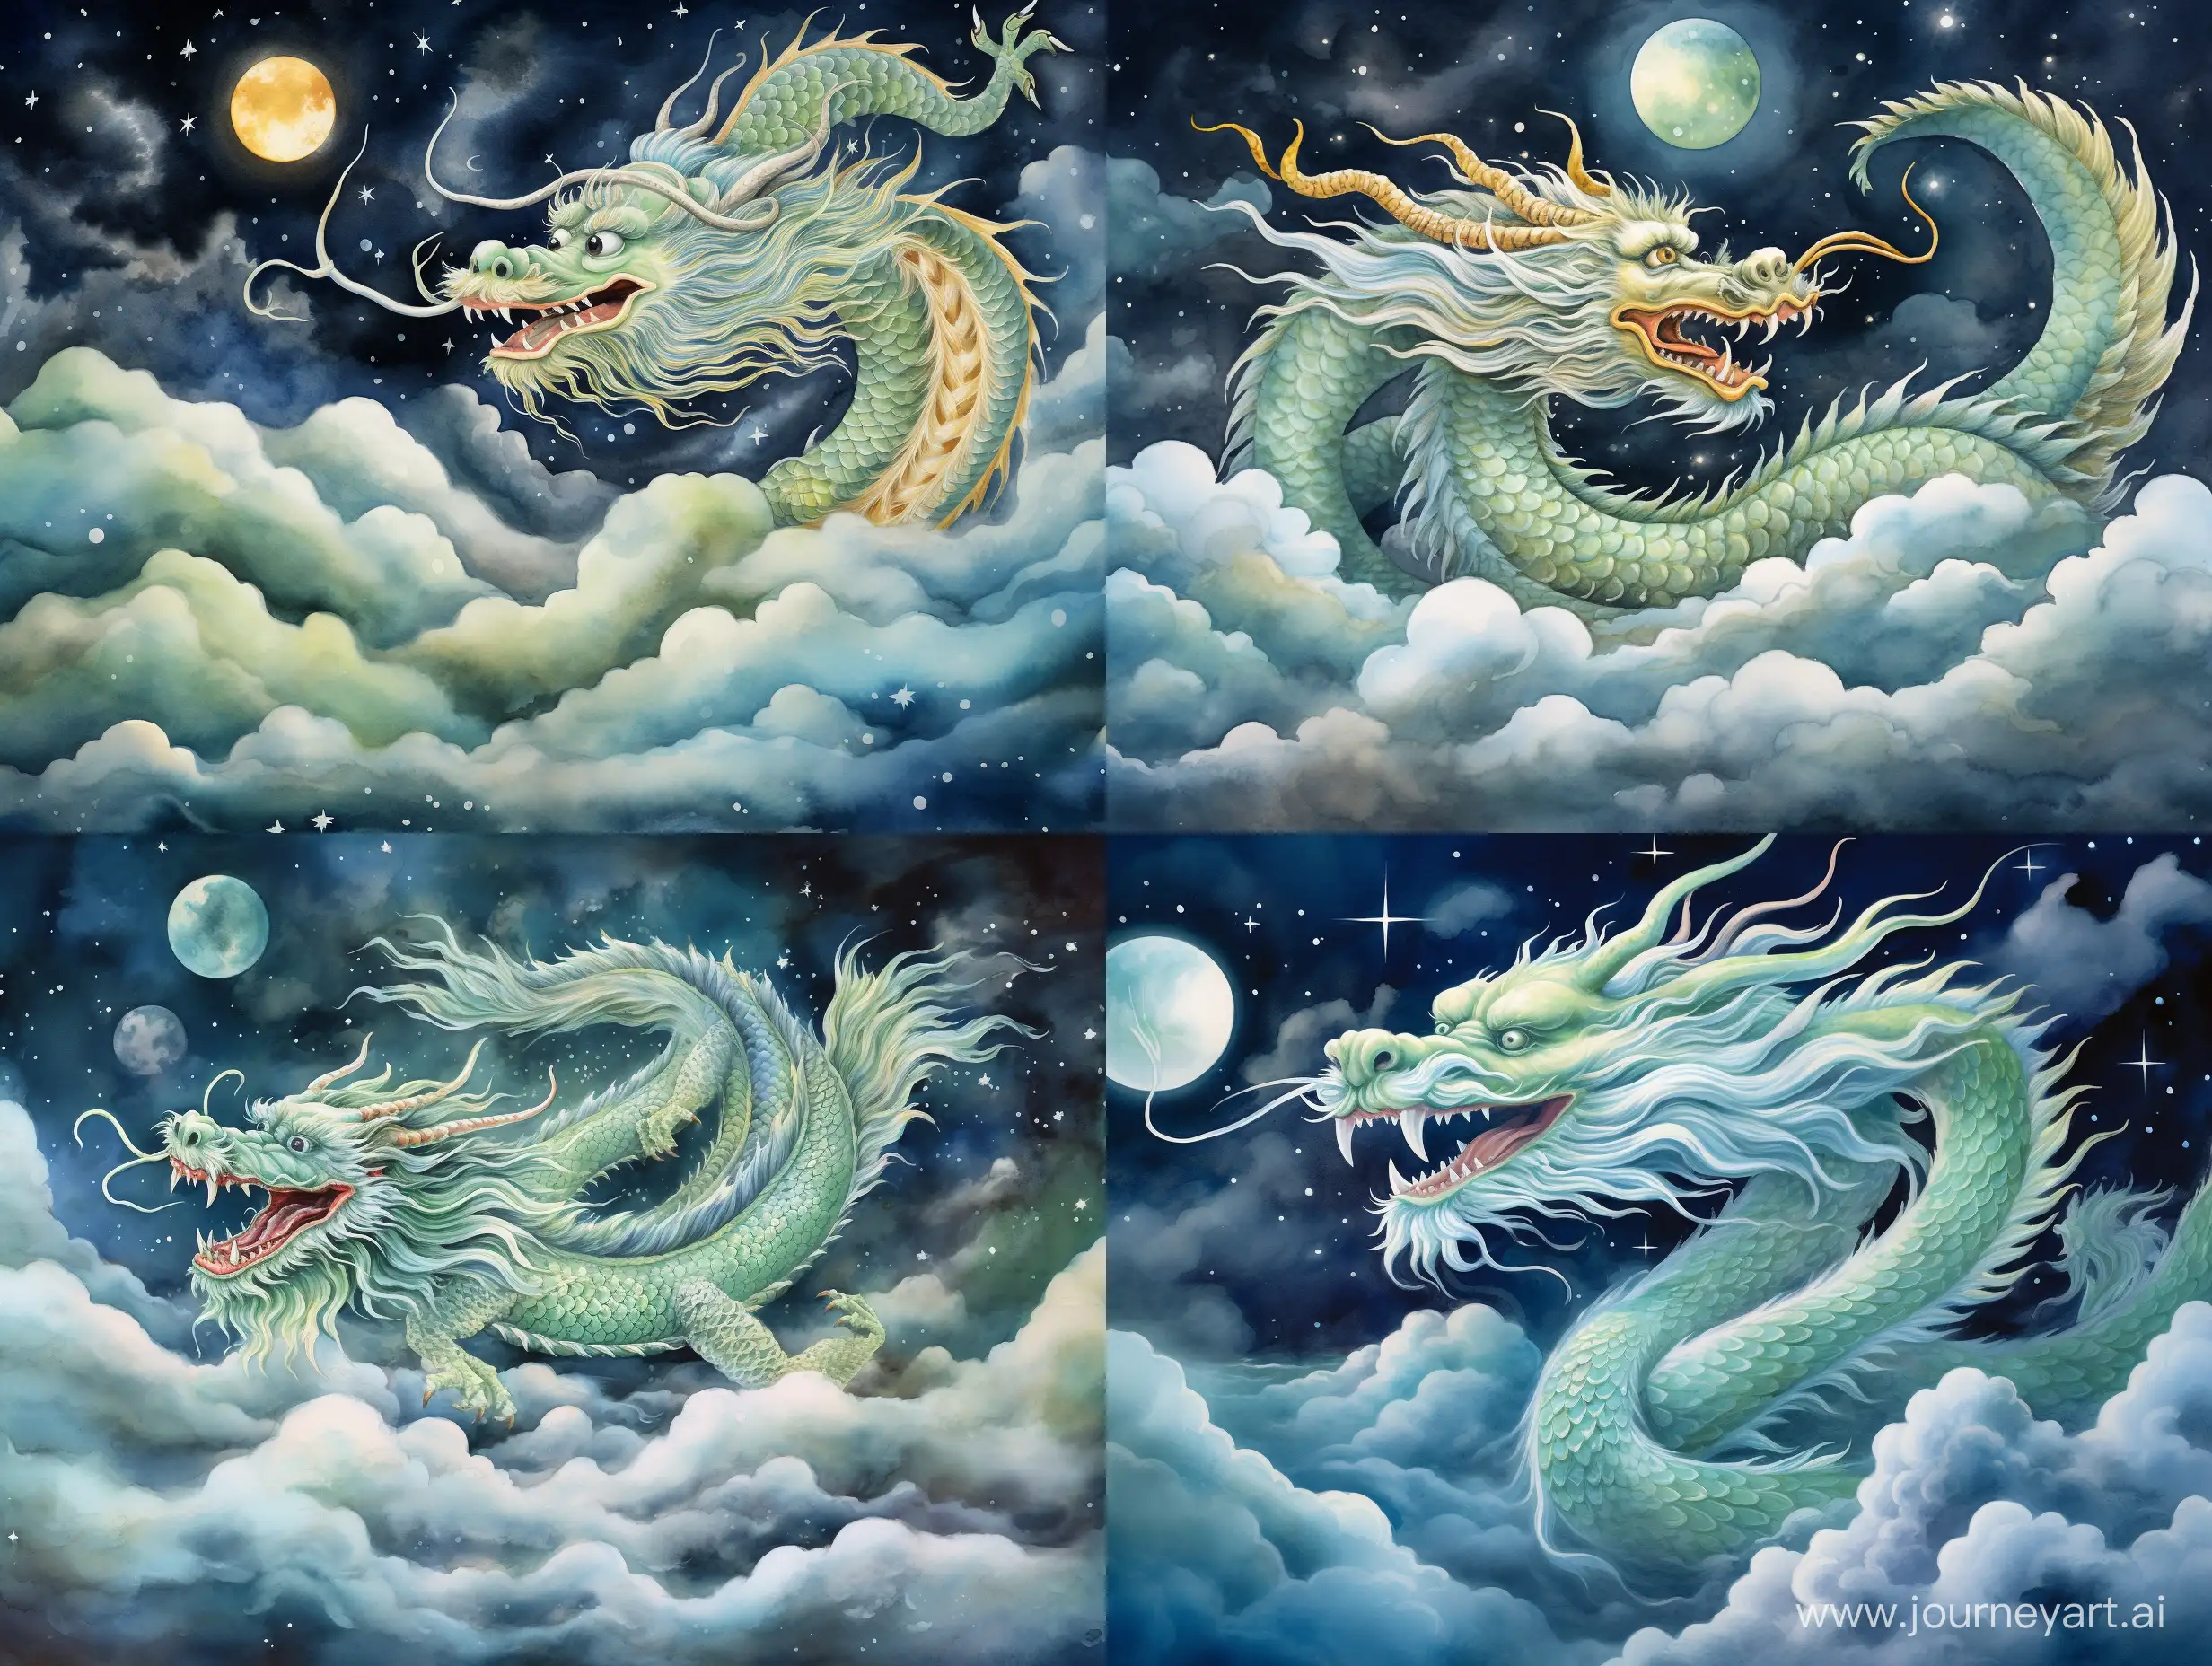 Зеленый китайский дракон летит над облаками,ночное небо, звезды, сказочно,  прекрасно, акварель, реалистично, детальная прорисовка